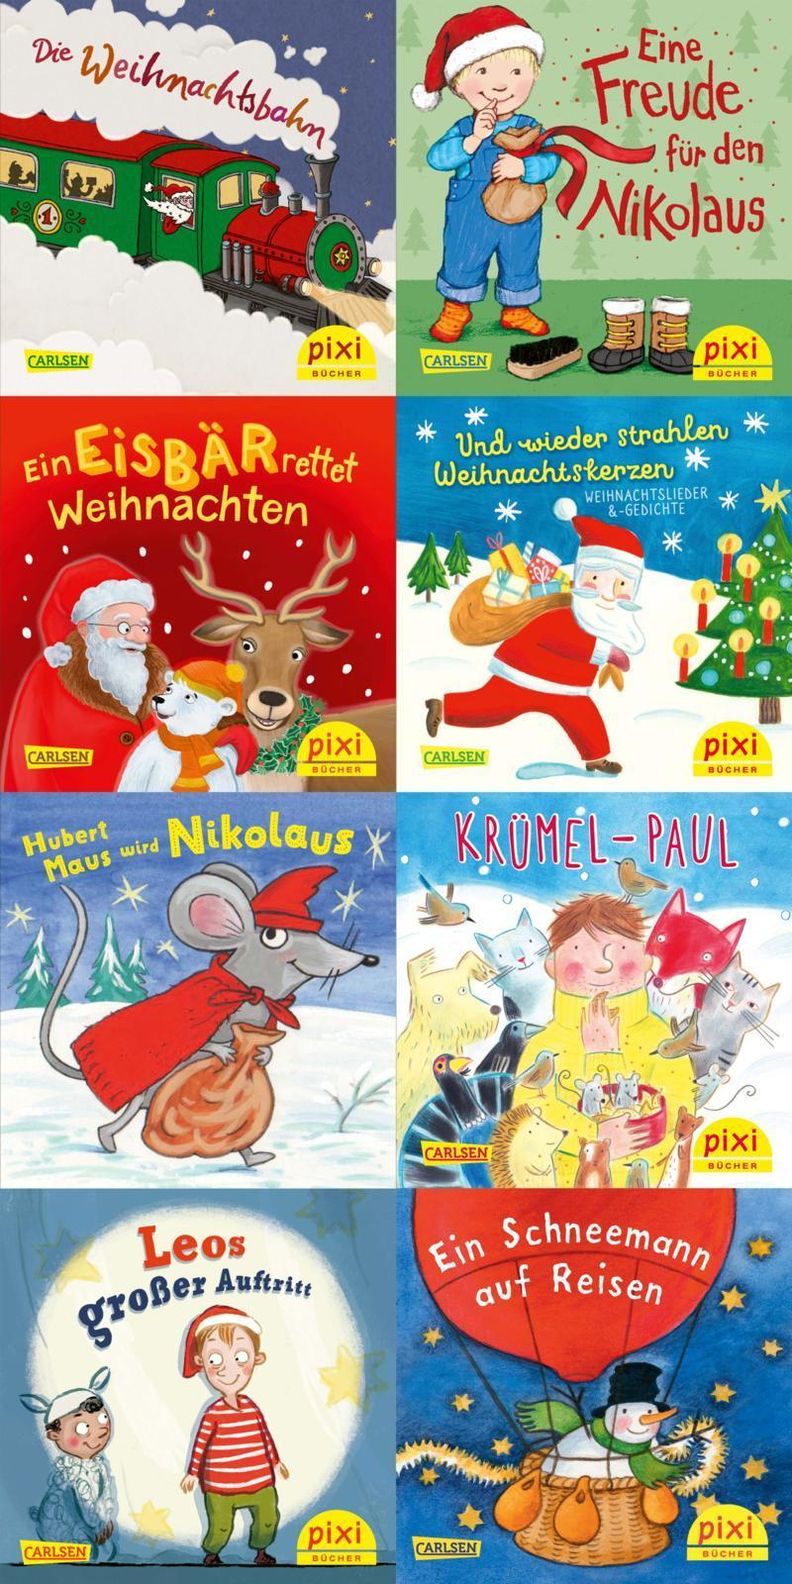 Pixi-8er-Set 37: Frohe Weihnachten mit Pixi 8x1 Exemplar, 8 Teile Buch  jetzt online bei Weltbild.at bestellen